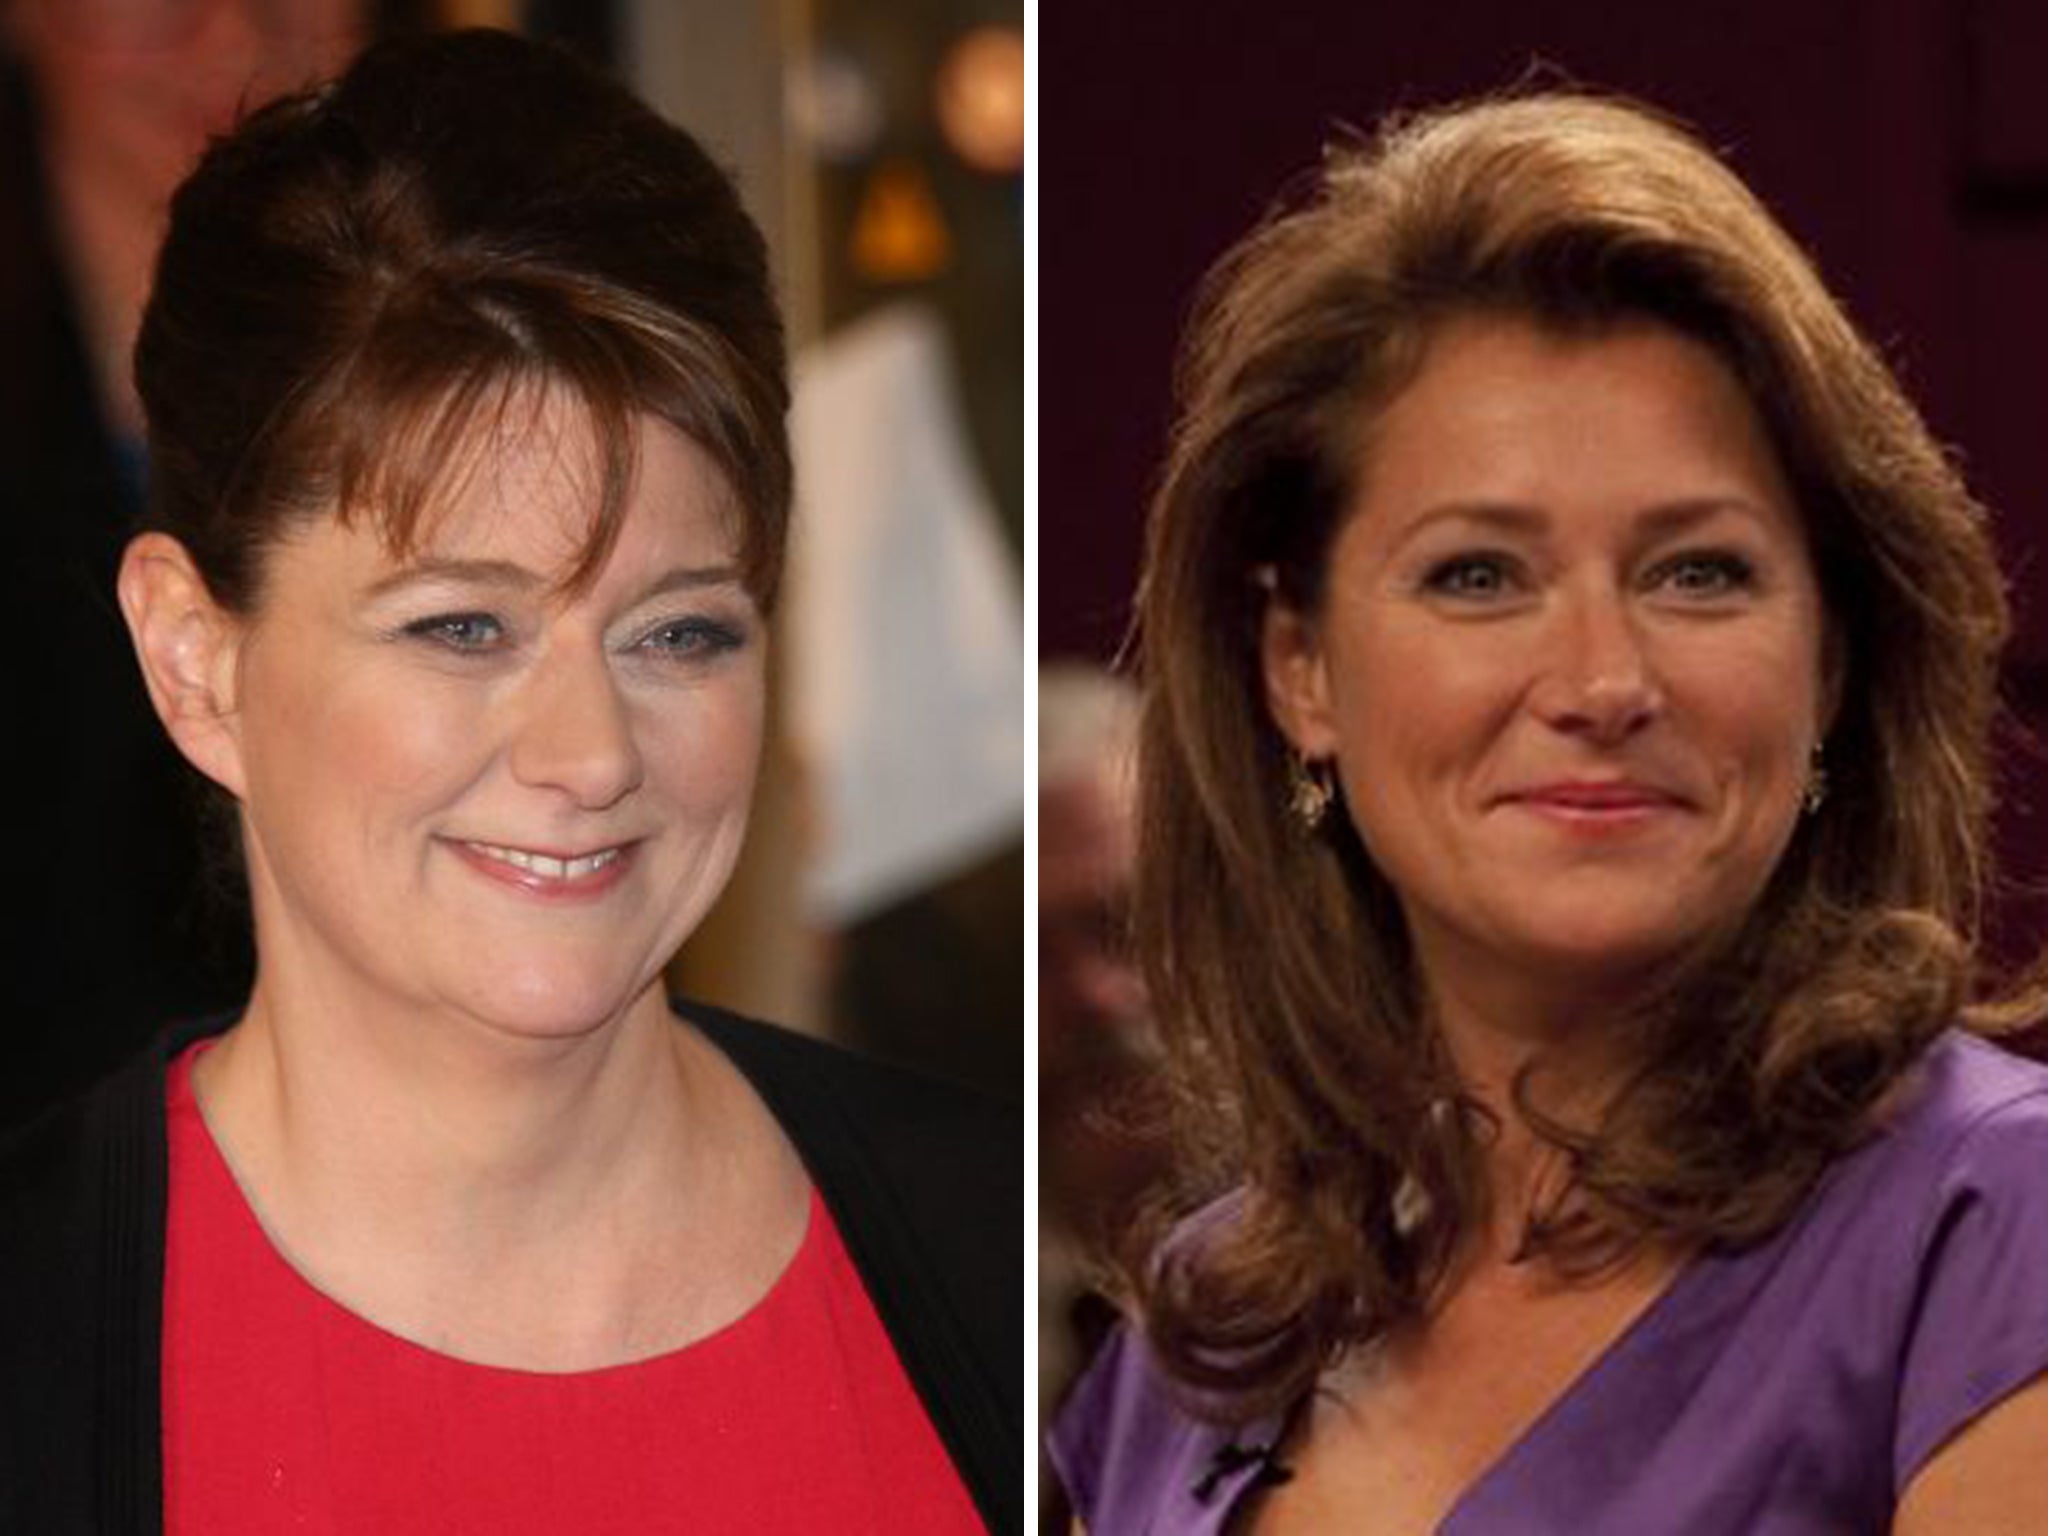 Plaid Cymru leader Leanne Wood almost provided the Birgitte Nyborg Moment in this week's Leaders' Debate